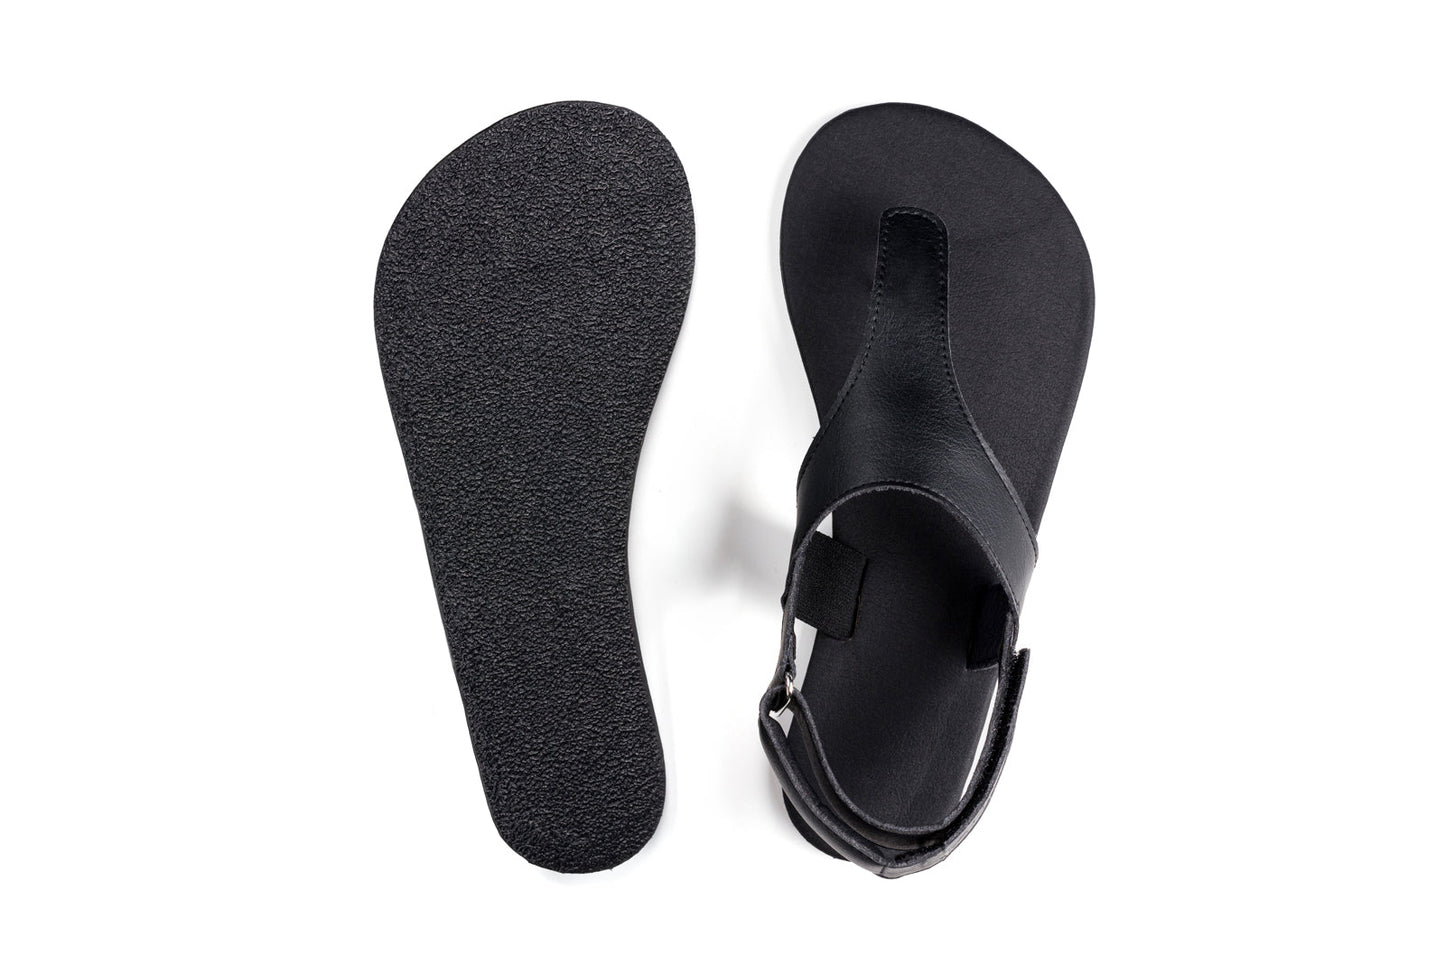 Ahinsa Simple barfods sandaler til mænd i farven black, top